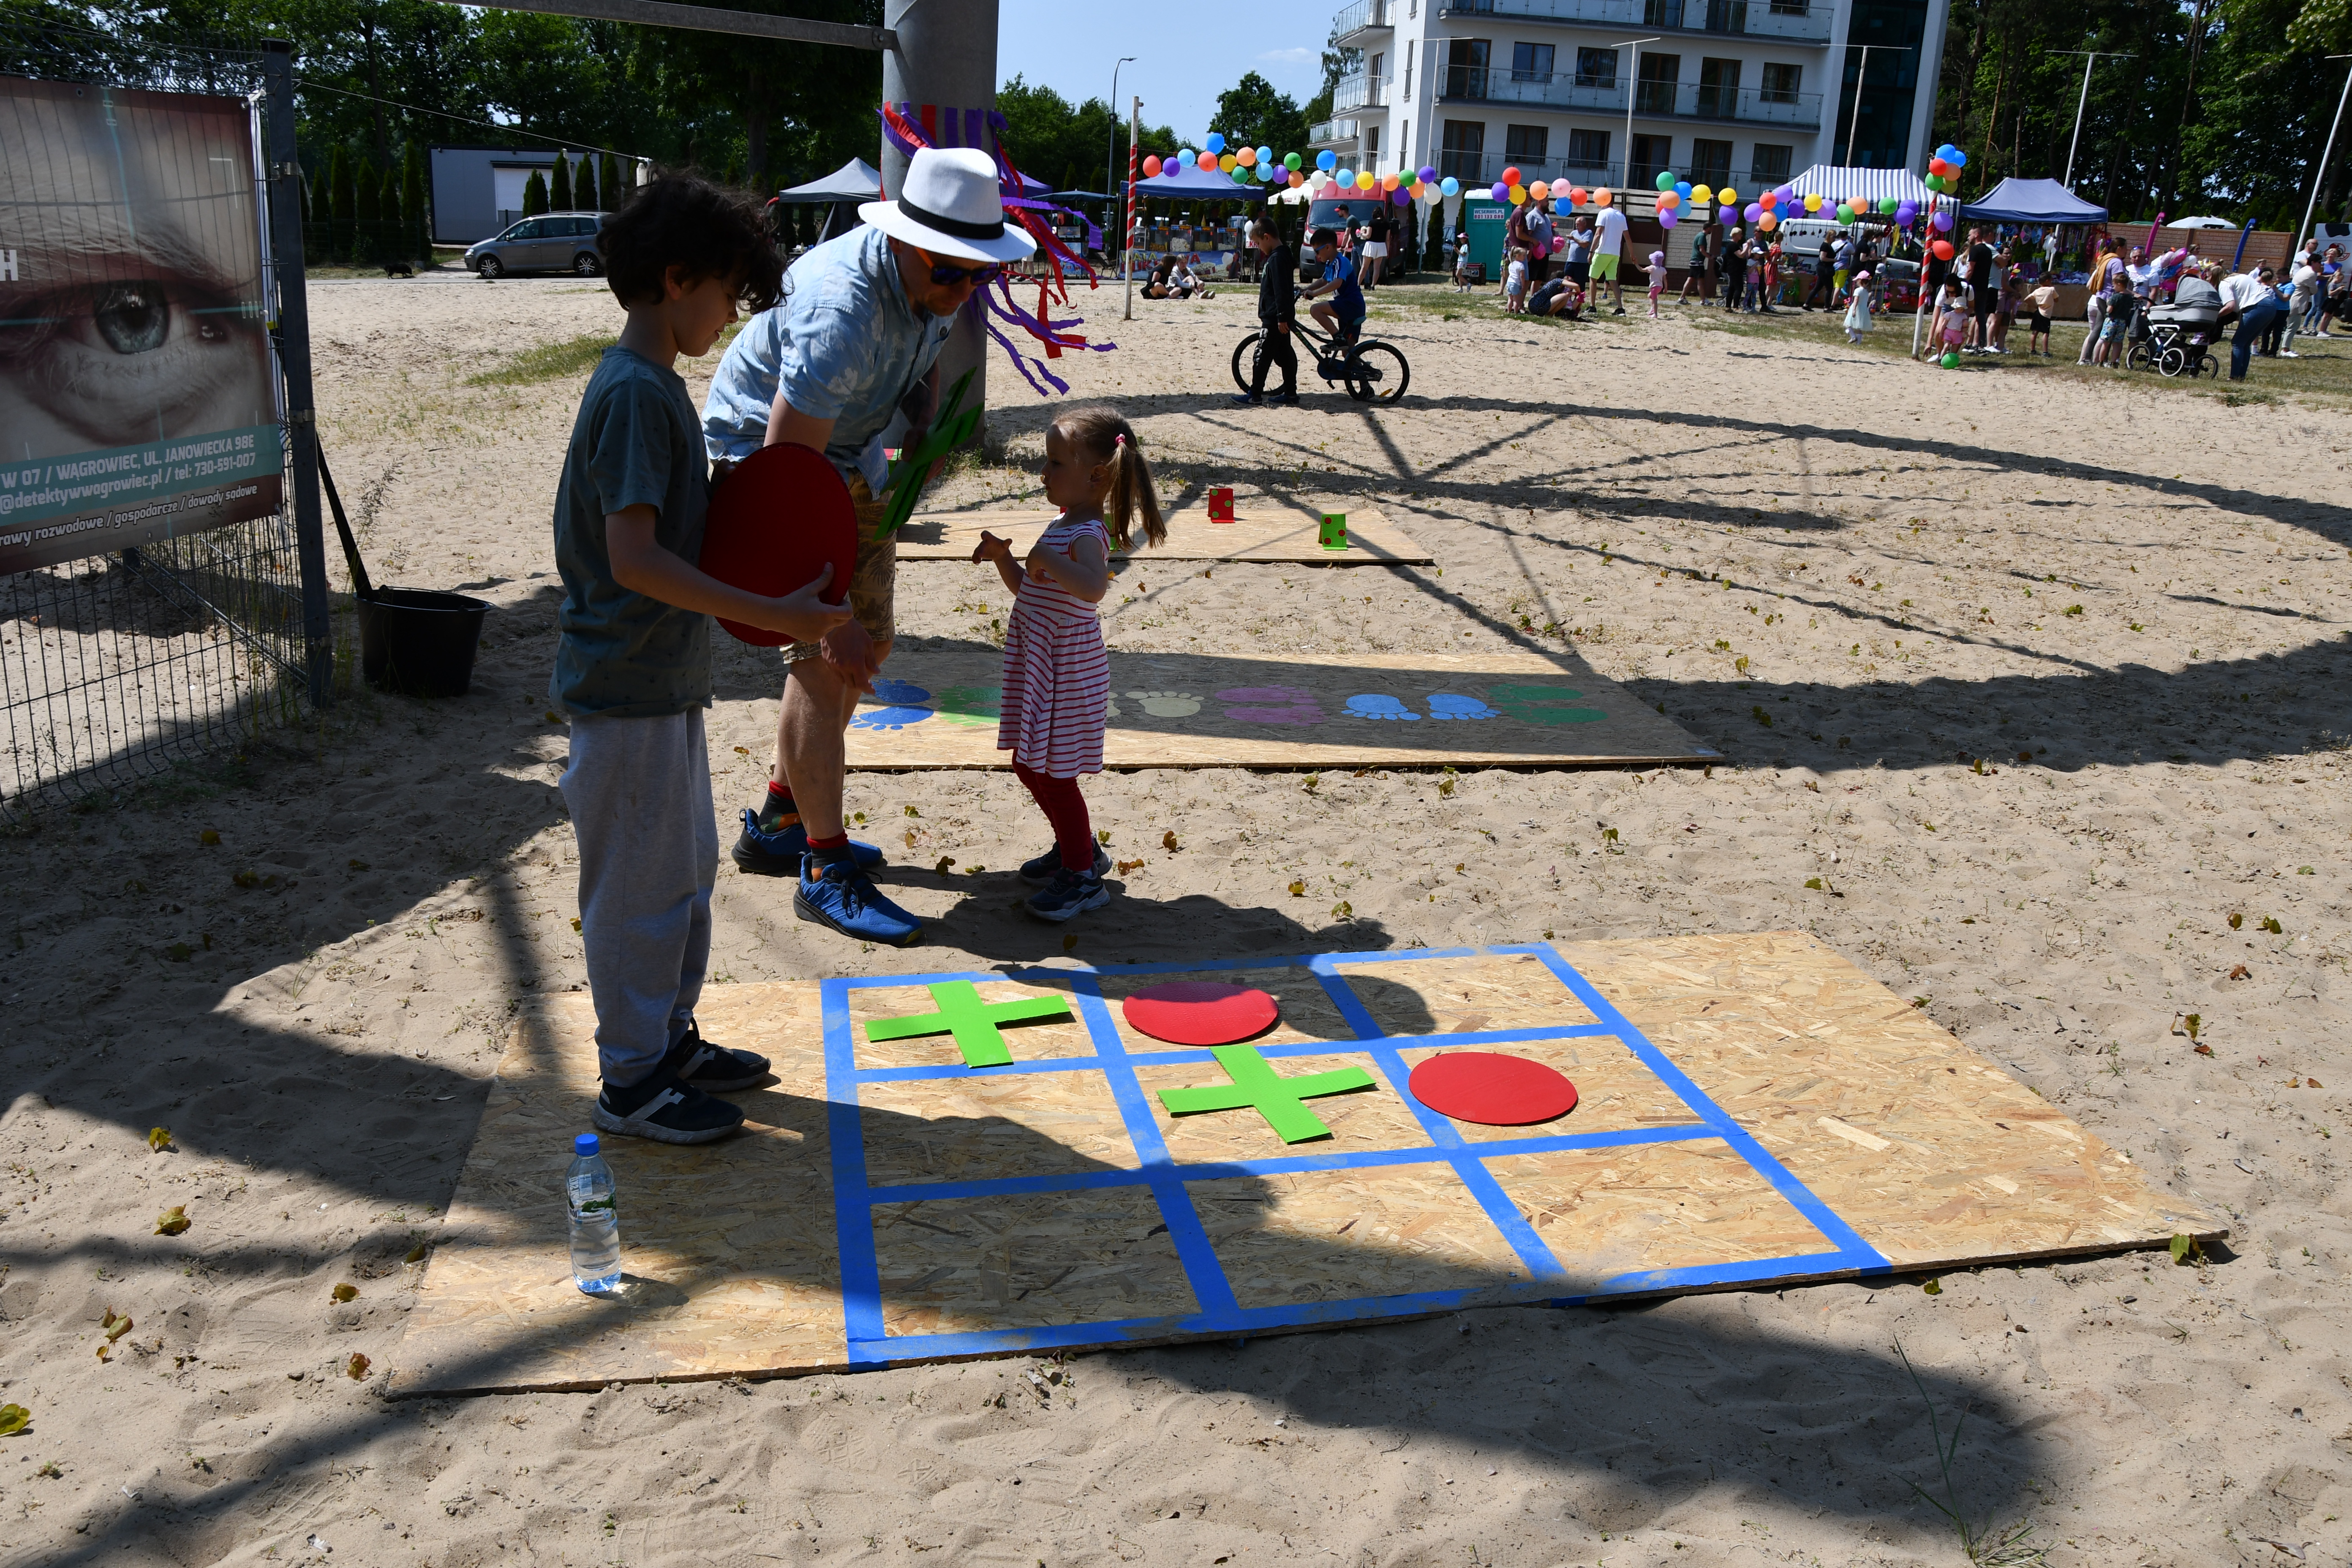 Dwójka dzieci wraz z jednym dorosłym grają w duże kółko i krzyżyk na ziemi na plaży w Margoninie.